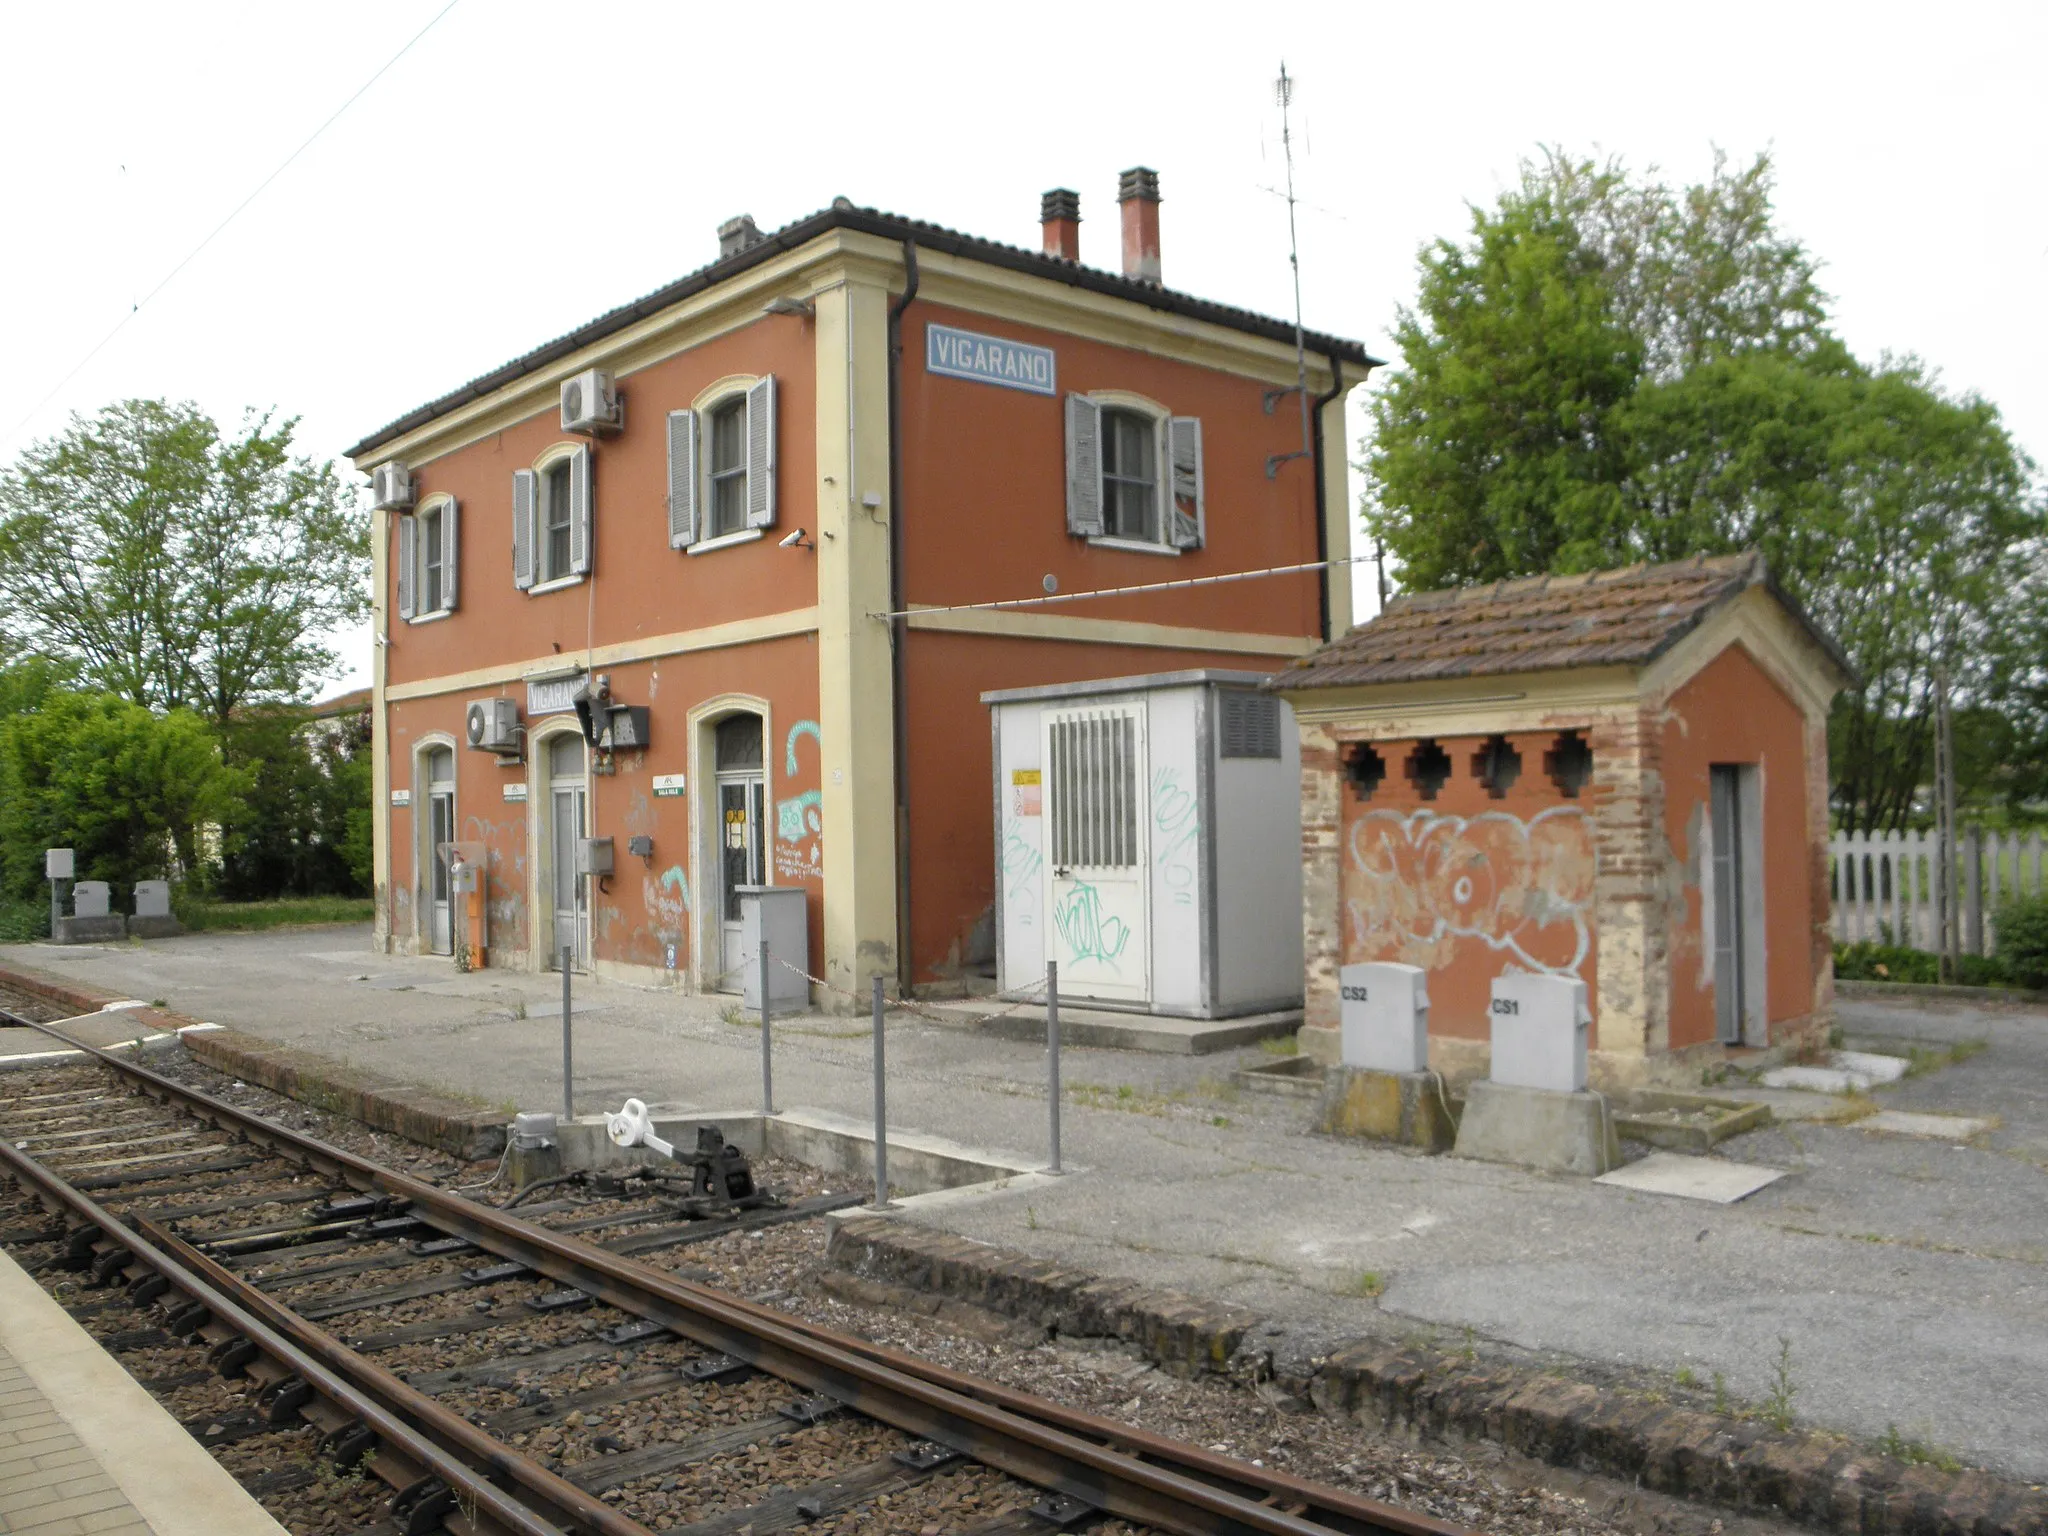 Billede af Emilia-Romagna